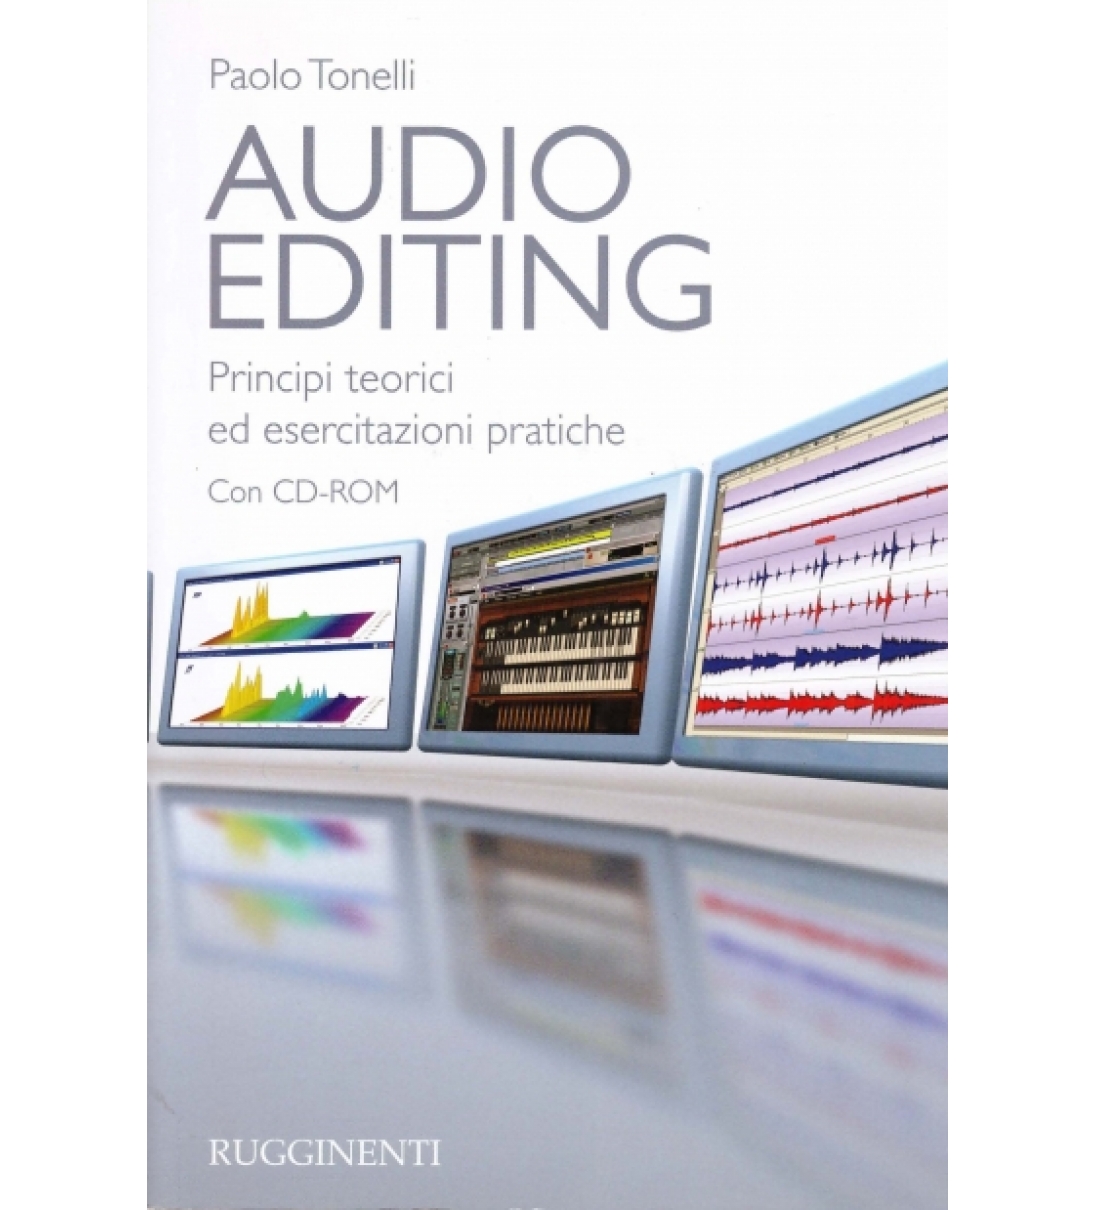 Audio Editing - Principi teorici ed esercitazioni pratiche (con CD)